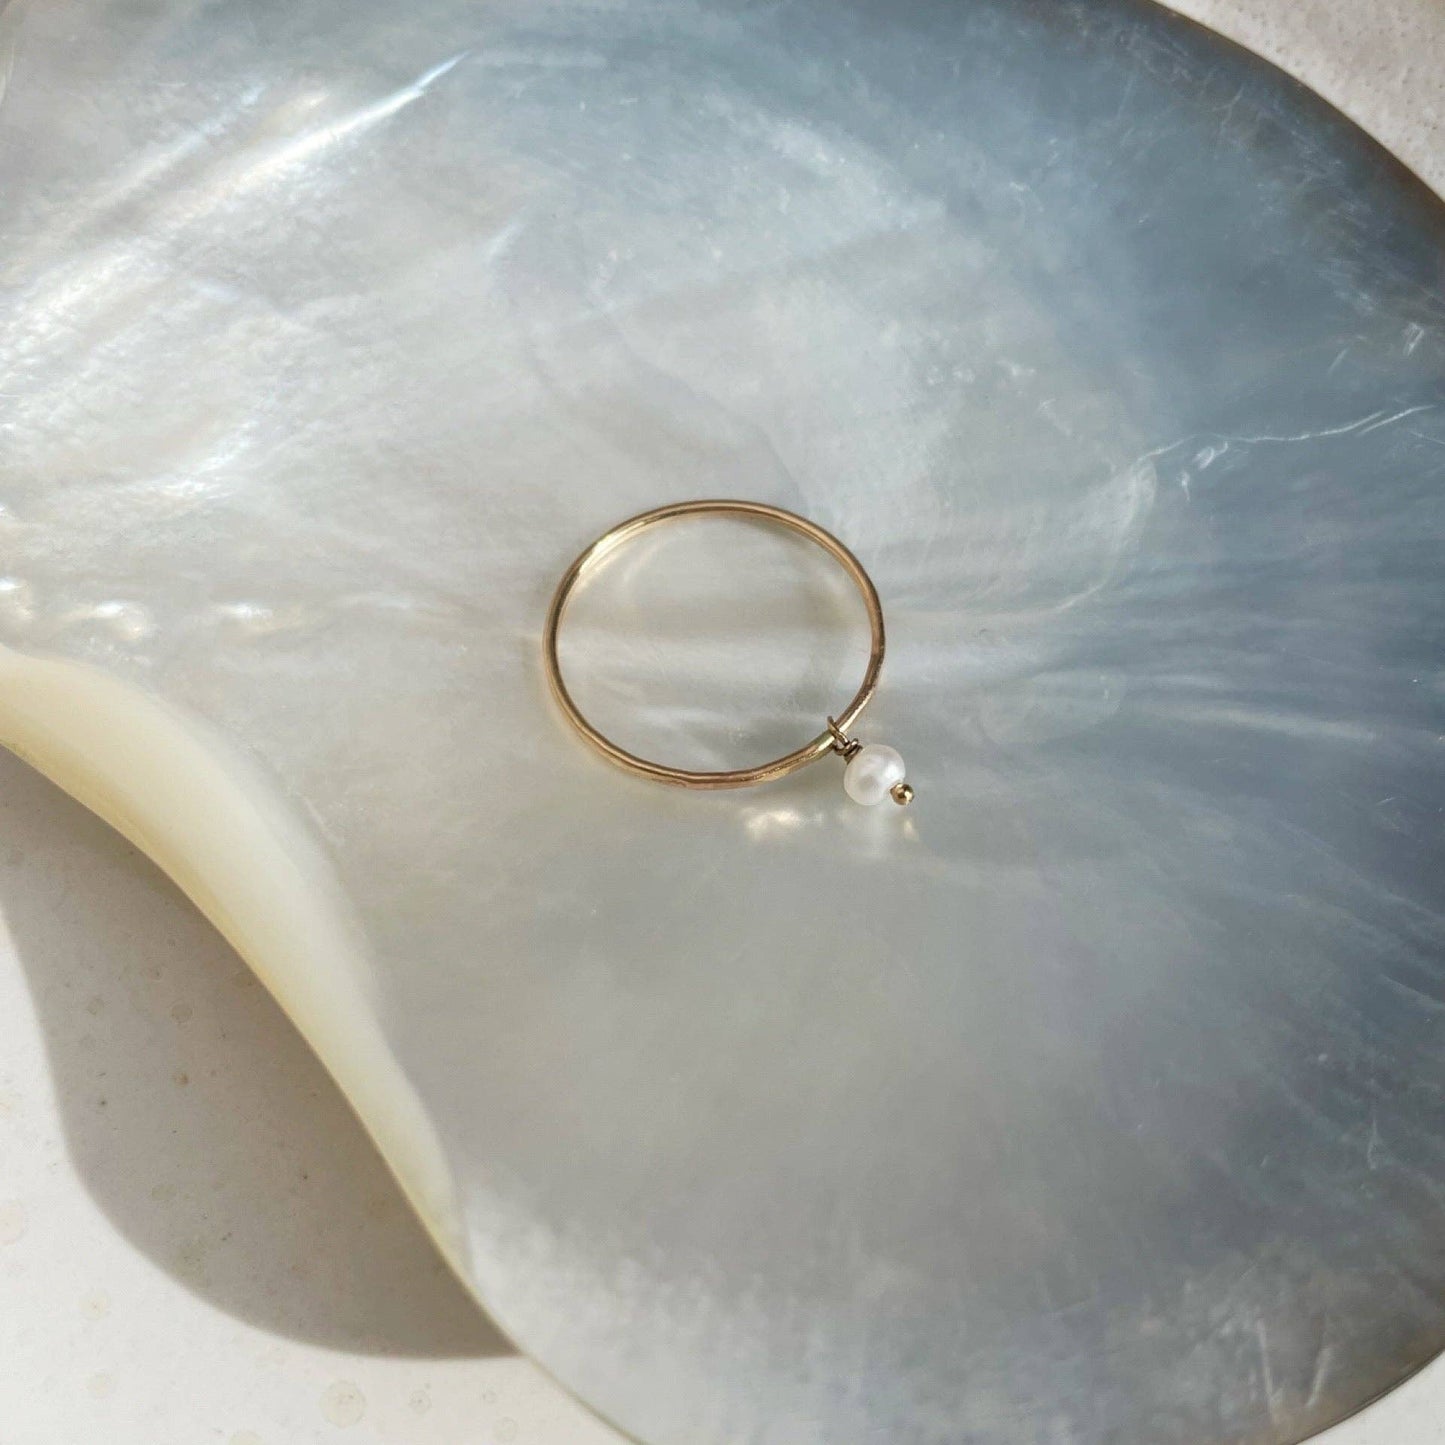 Pearla Ring: 7 / 14k Gold Fill